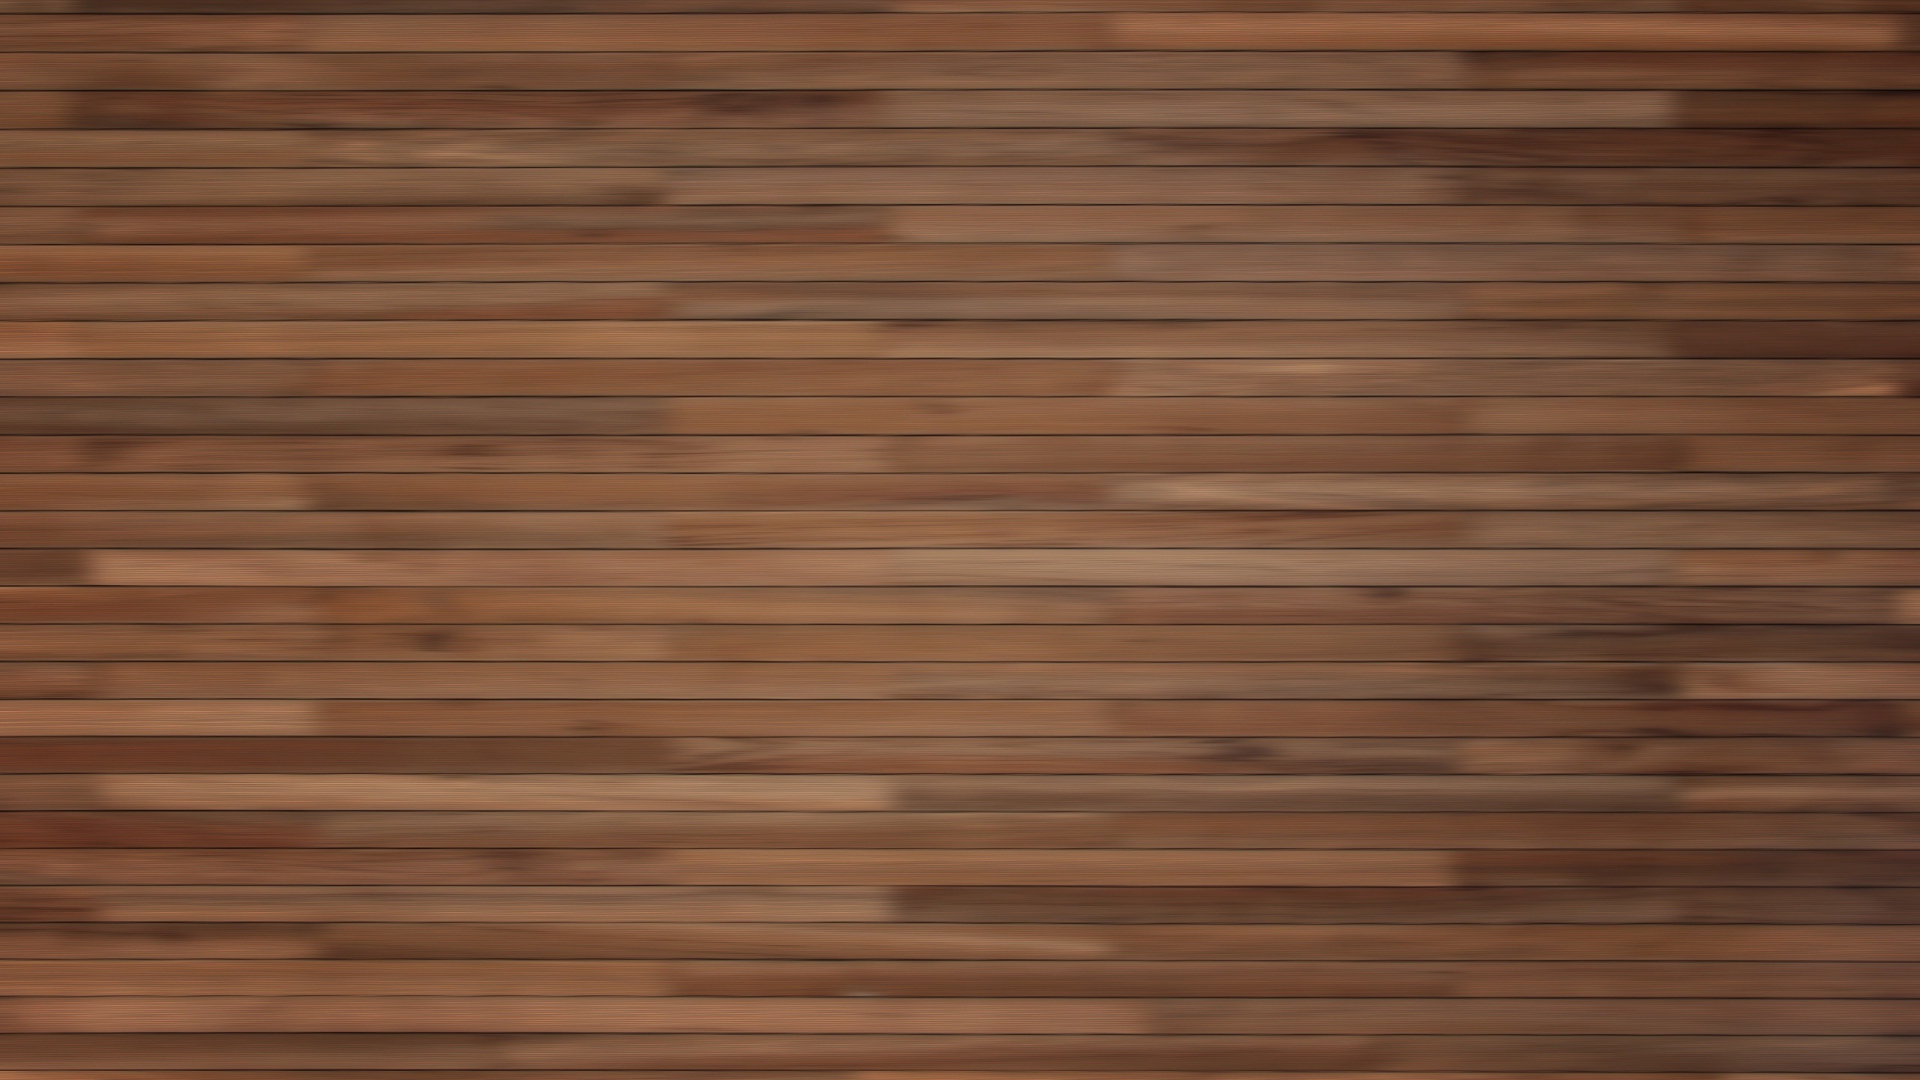 49 wood wallpaper 1080p on wallpapersafari wood wallpaper 1080p on wallpapersafari